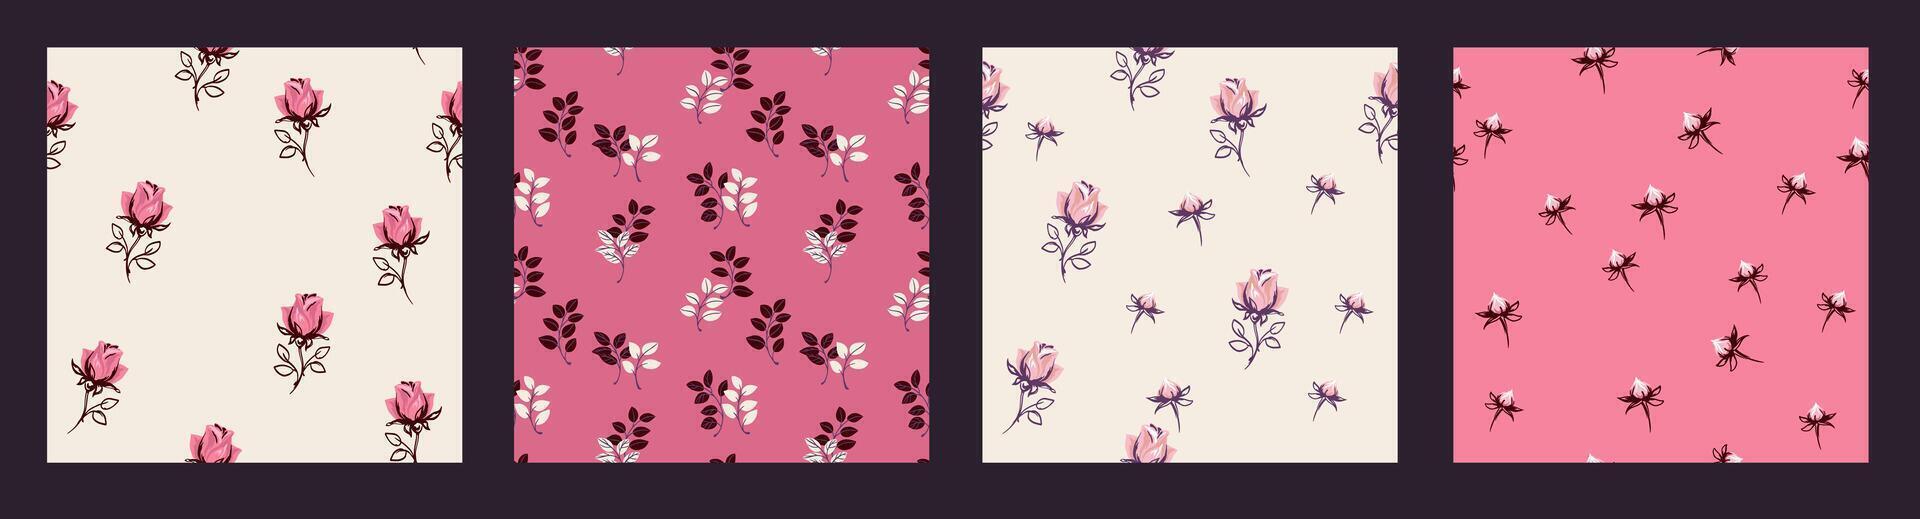 rosado linda collage de conjunto sin costura patrones con resumen minúsculo flores rosas, capullo de rosa, brotes, formas estilizado hojas. vector mano dibujado bosquejo. plantillas para diseño, impresión, tela,